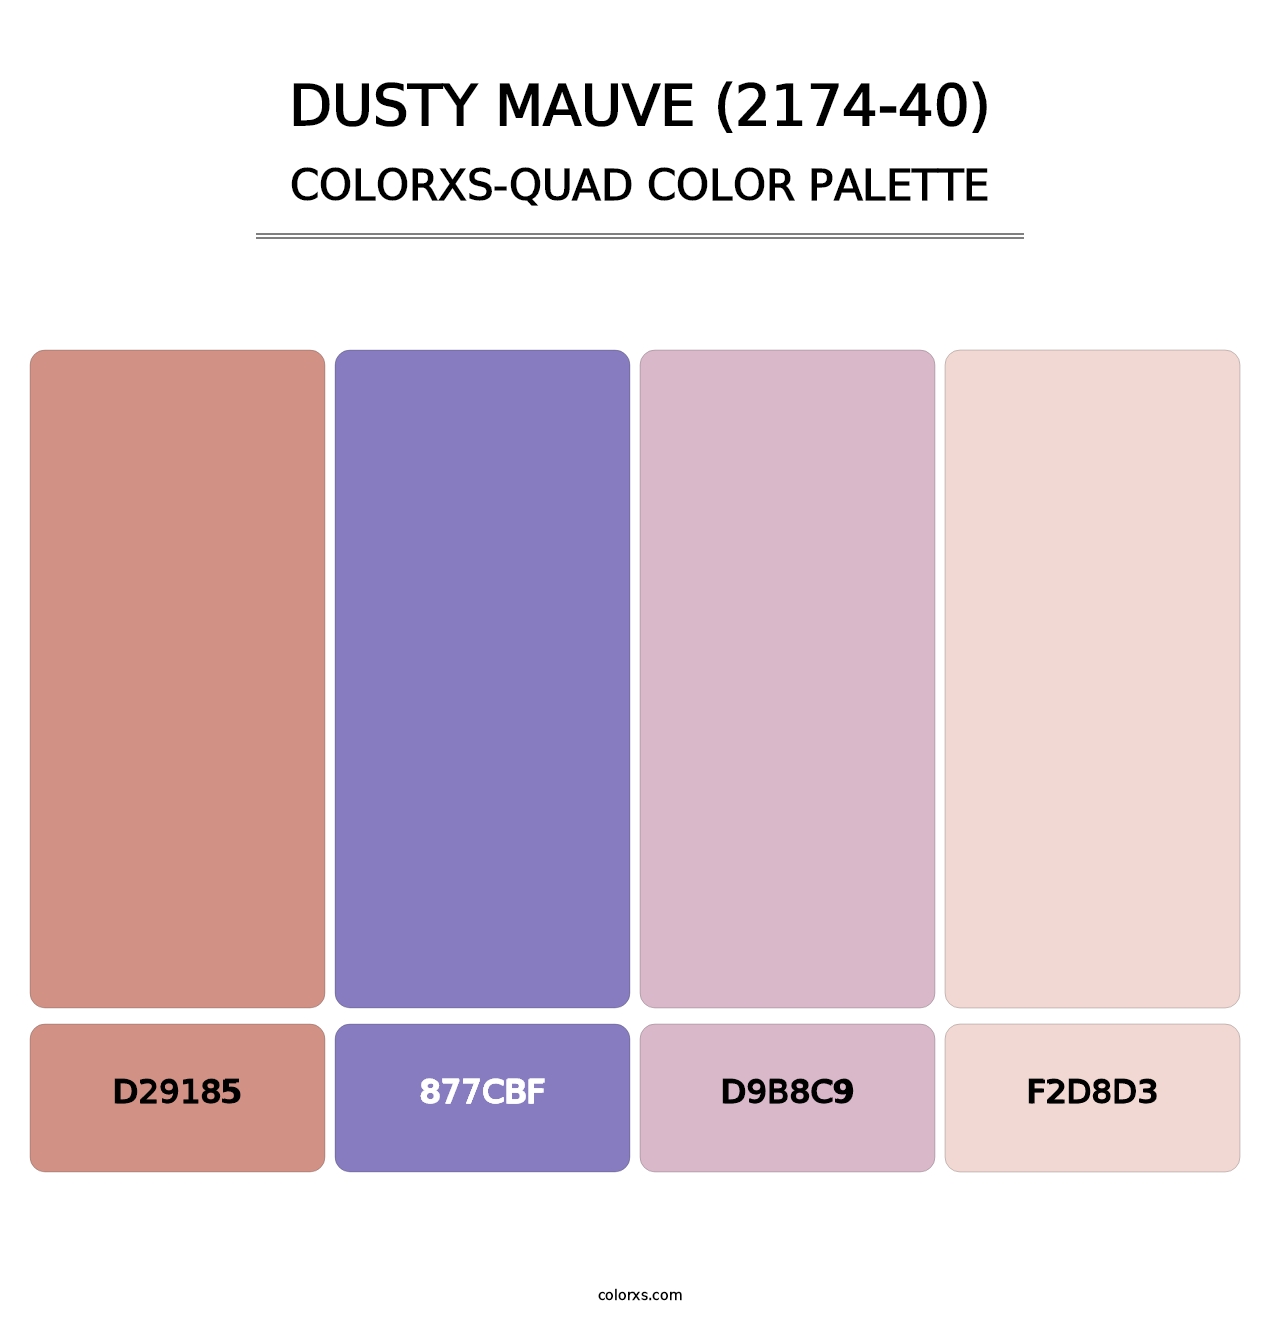 Dusty Mauve (2174-40) - Colorxs Quad Palette